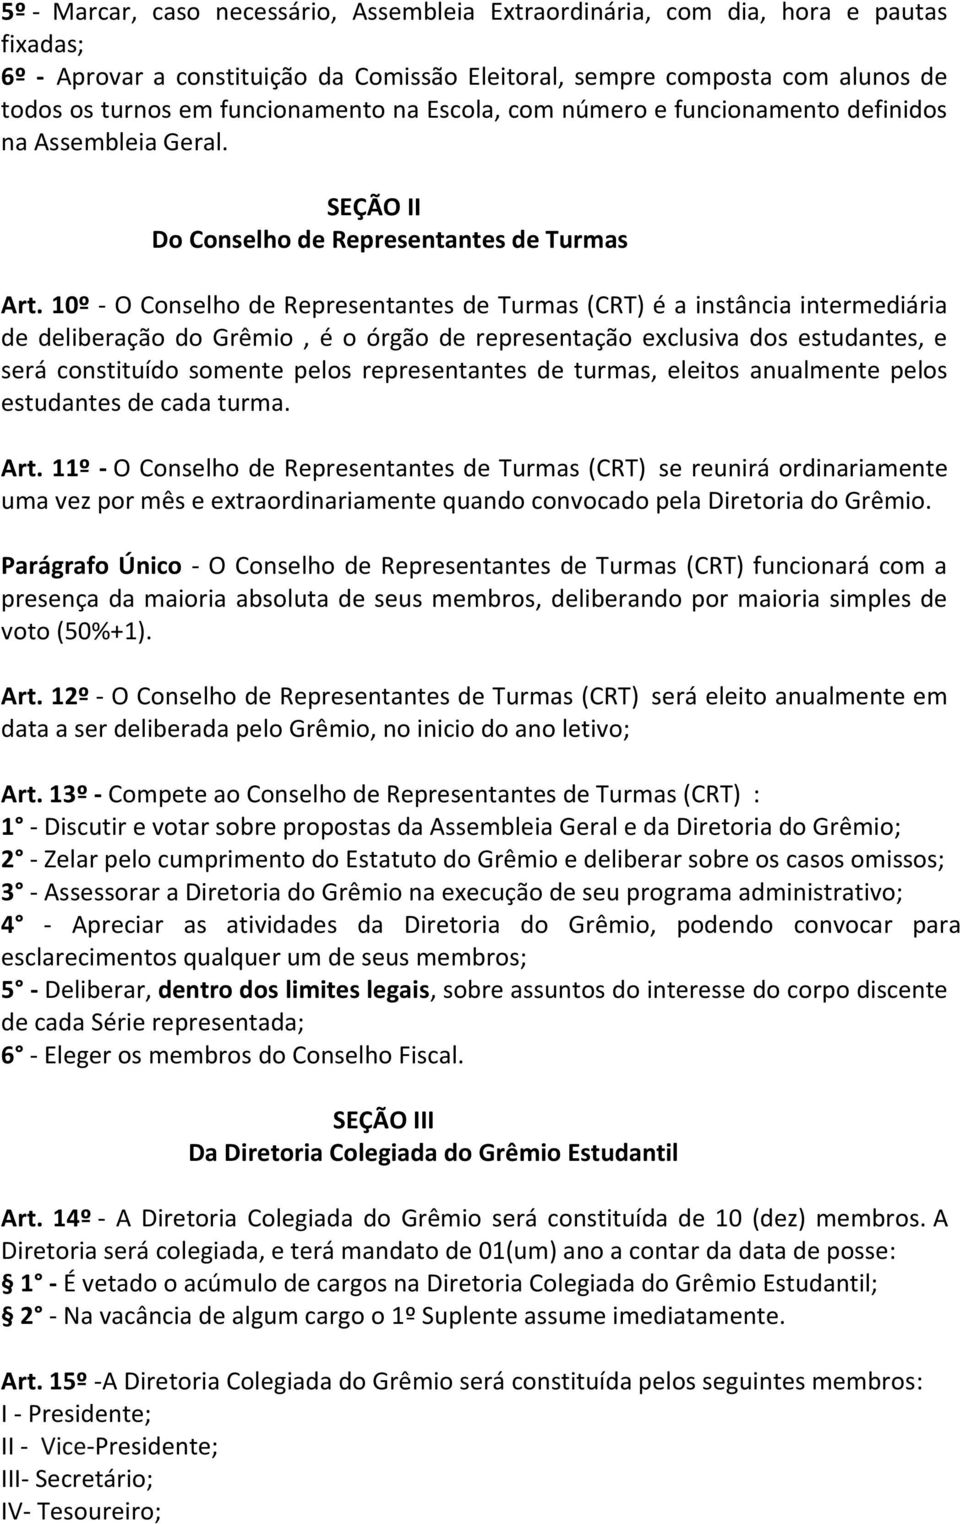 10º - O Conselho de Representantes de Turmas (CRT) é a instância intermediária de deliberação do Grêmio, é o órgão de representação exclusiva dos estudantes, e será constituído somente pelos